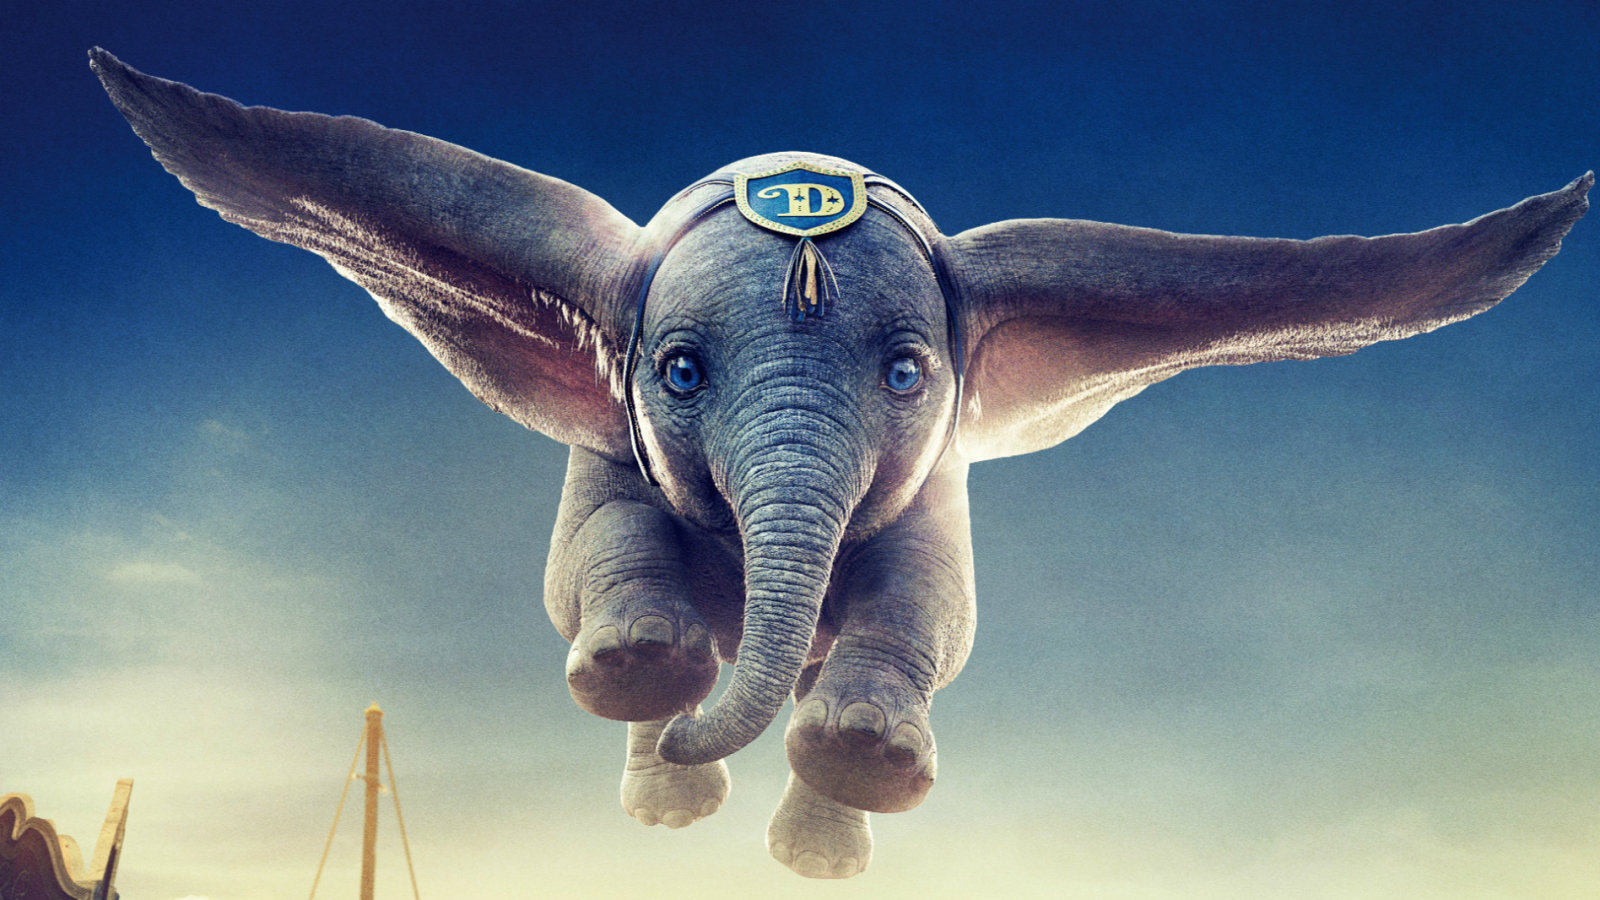 迪士尼真人电影《小飞象》将于3月29日登陆内地院线